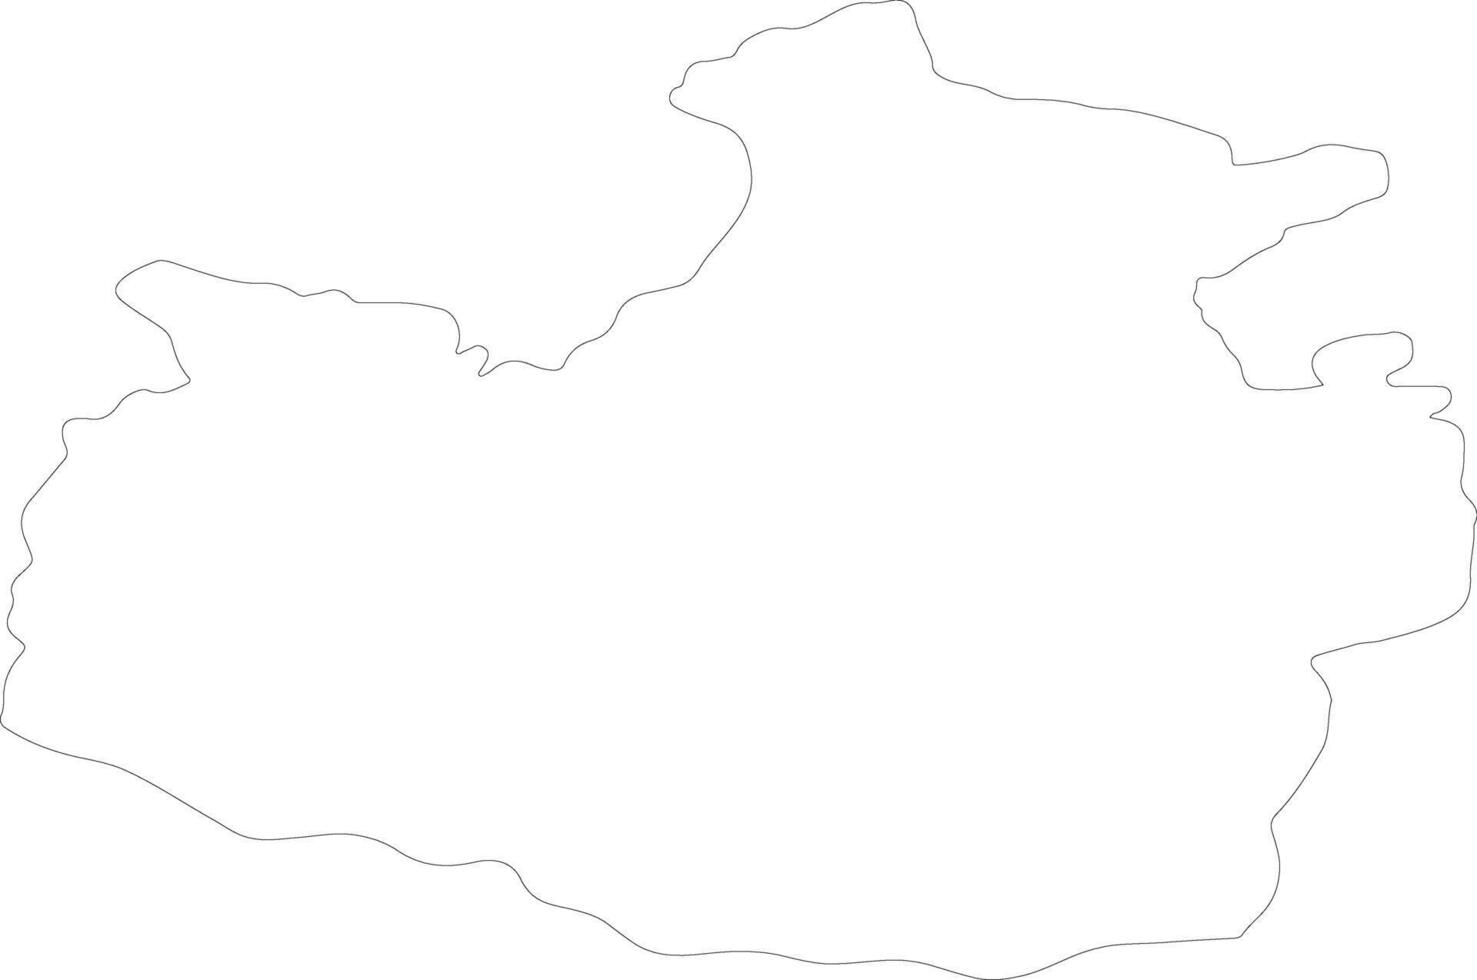 karachay-cherkess Rusia contorno mapa vector